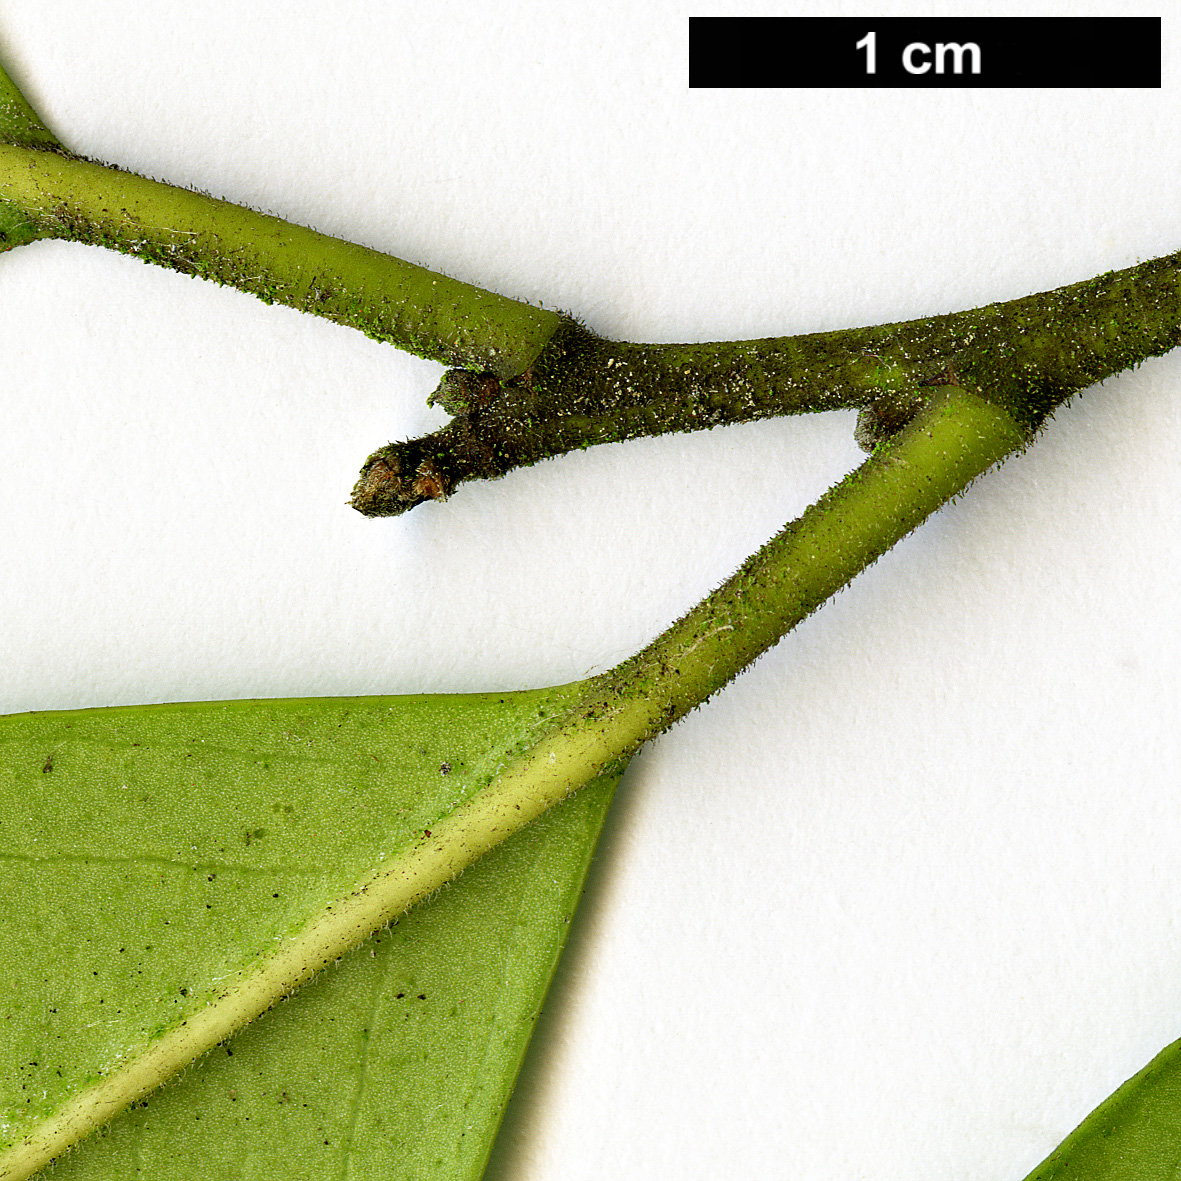 High resolution image: Family: Aquifoliaceae - Genus: Ilex - Taxon: cassine - SpeciesSub: × I.cumulicola '580 Lady'